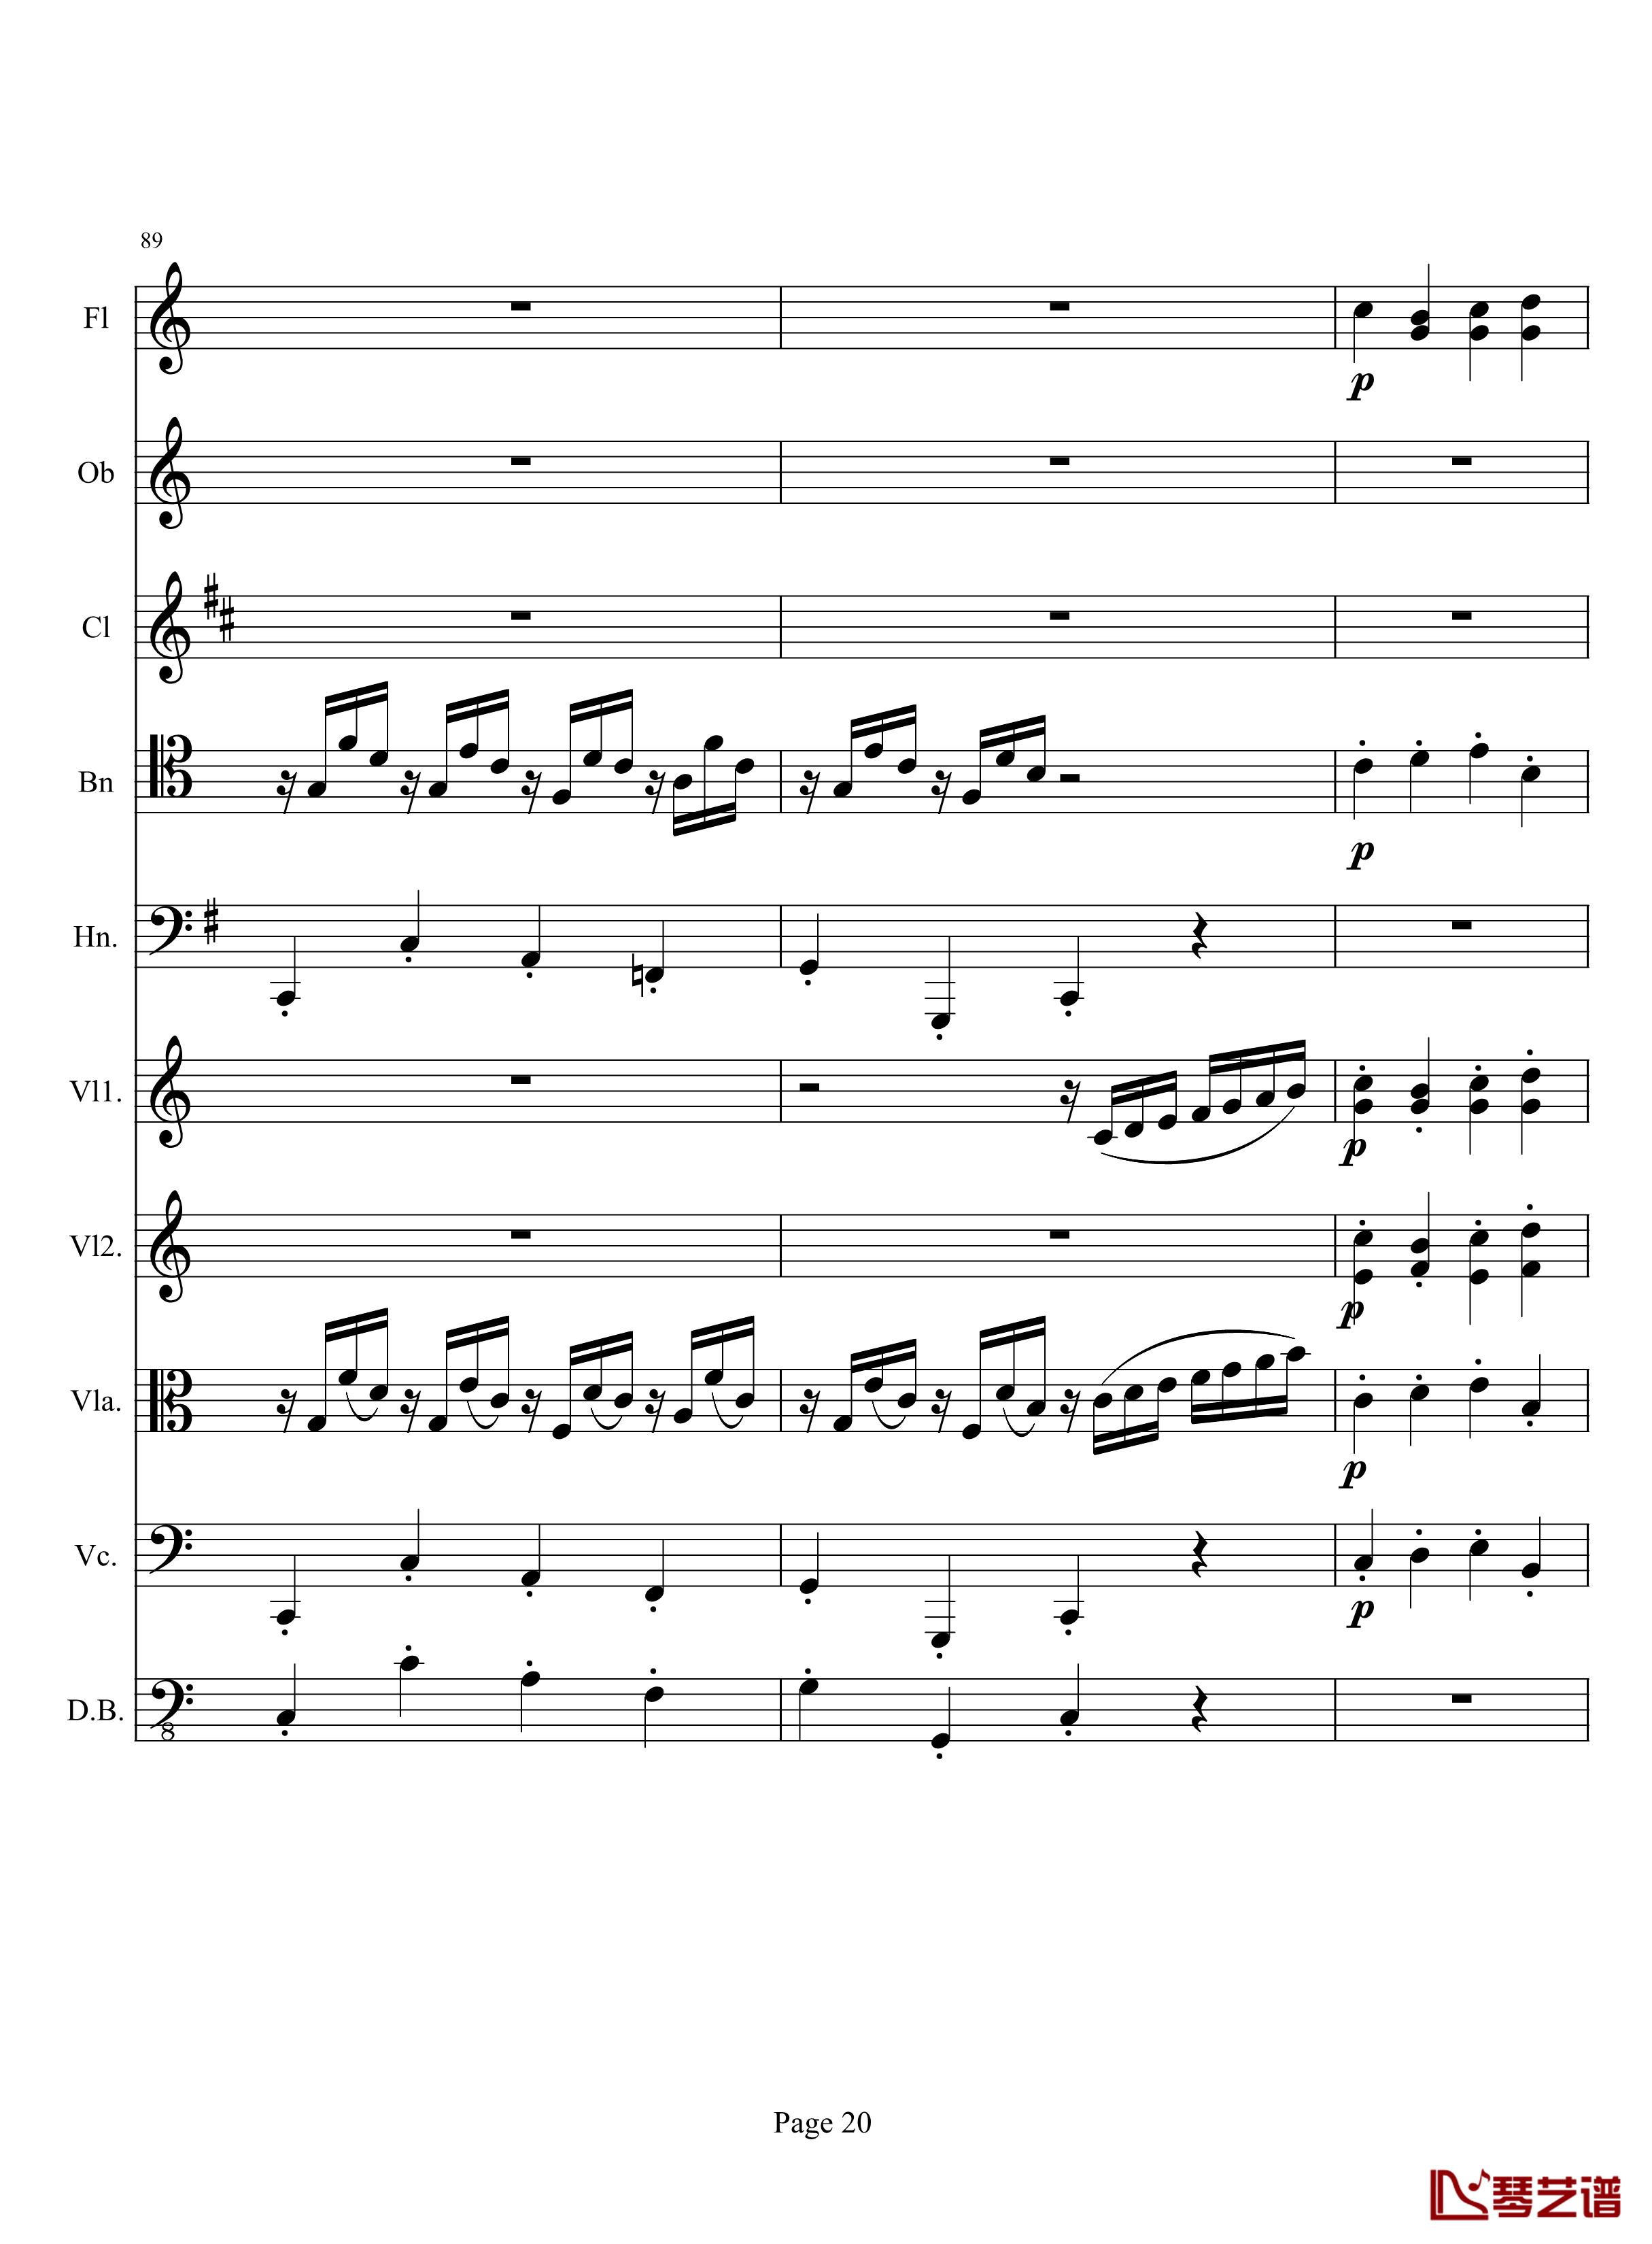 奏鸣曲之交响钢琴谱-第10首-2-贝多芬-beethoven20